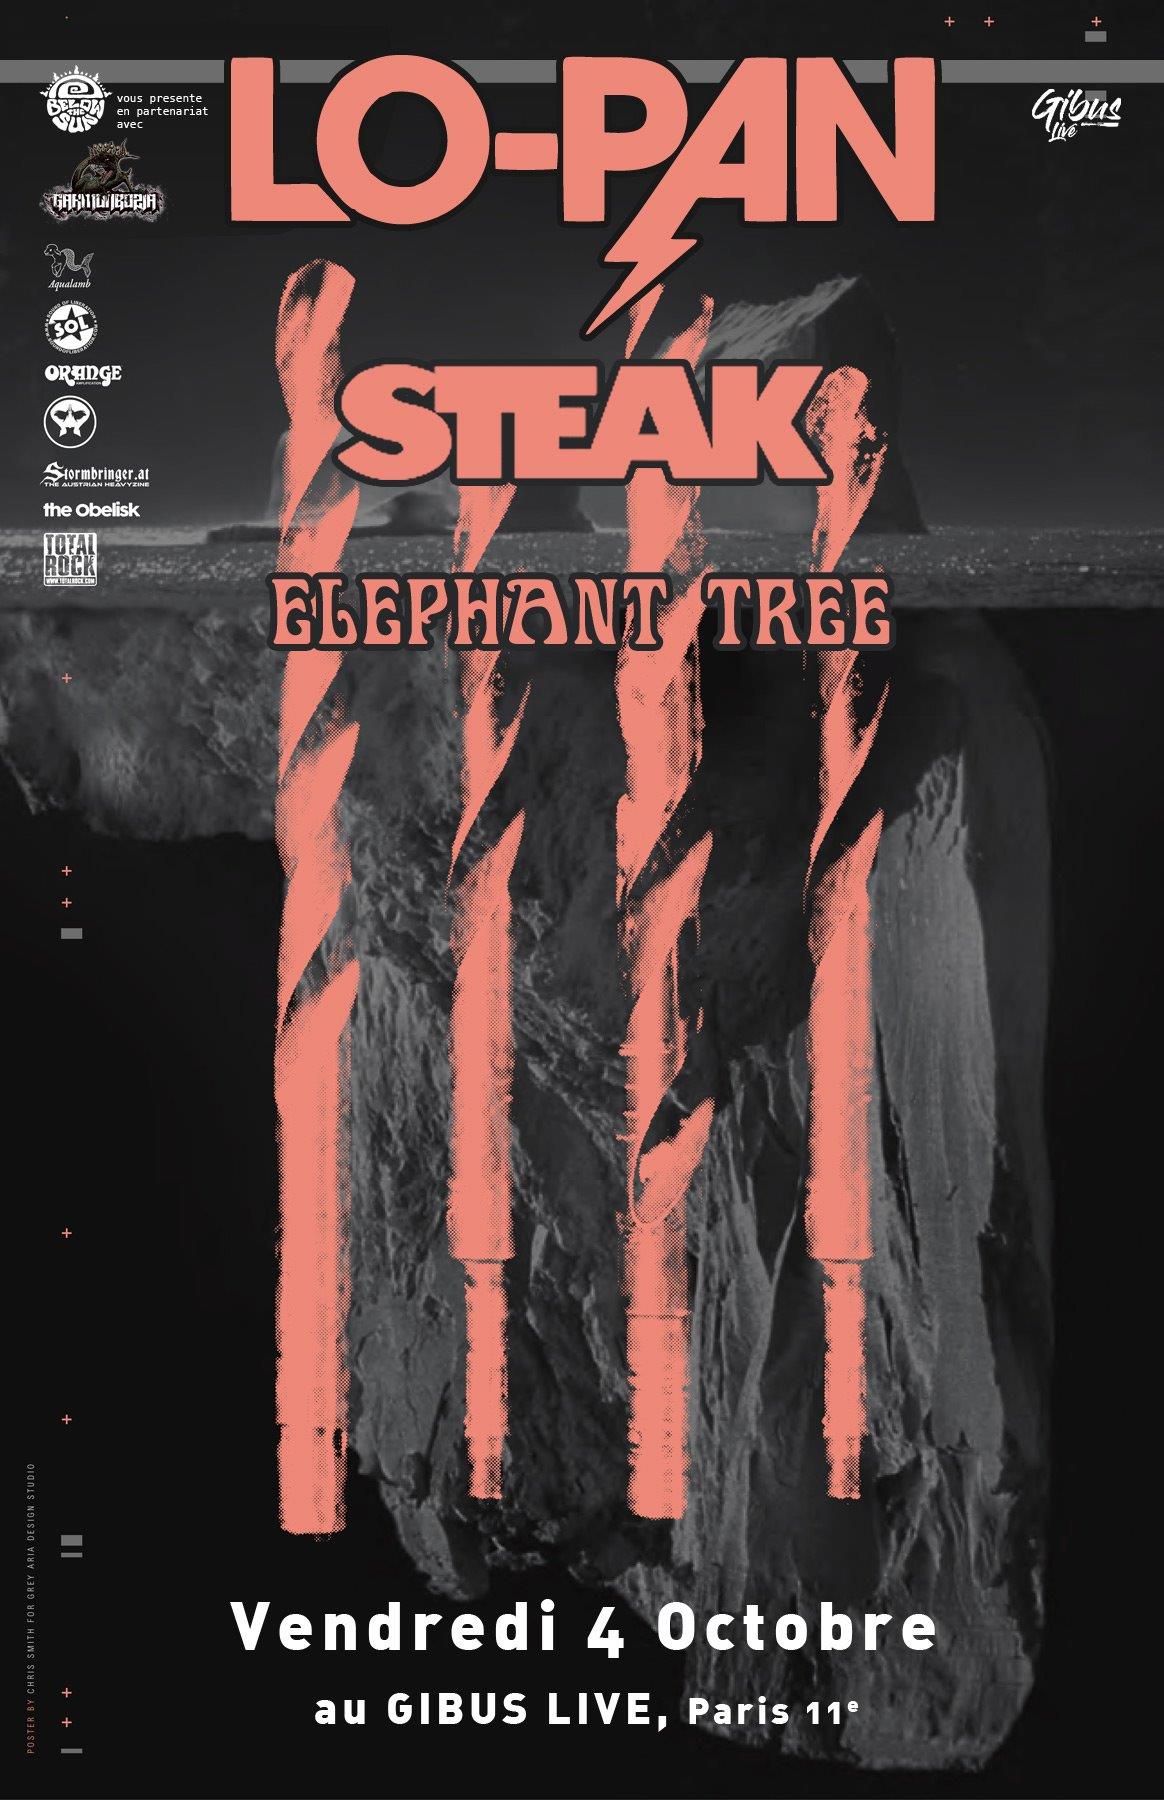 Lo-Pan + Steak + Elephant Tree @ Gibus (Paris), le 4 Octobre 2019